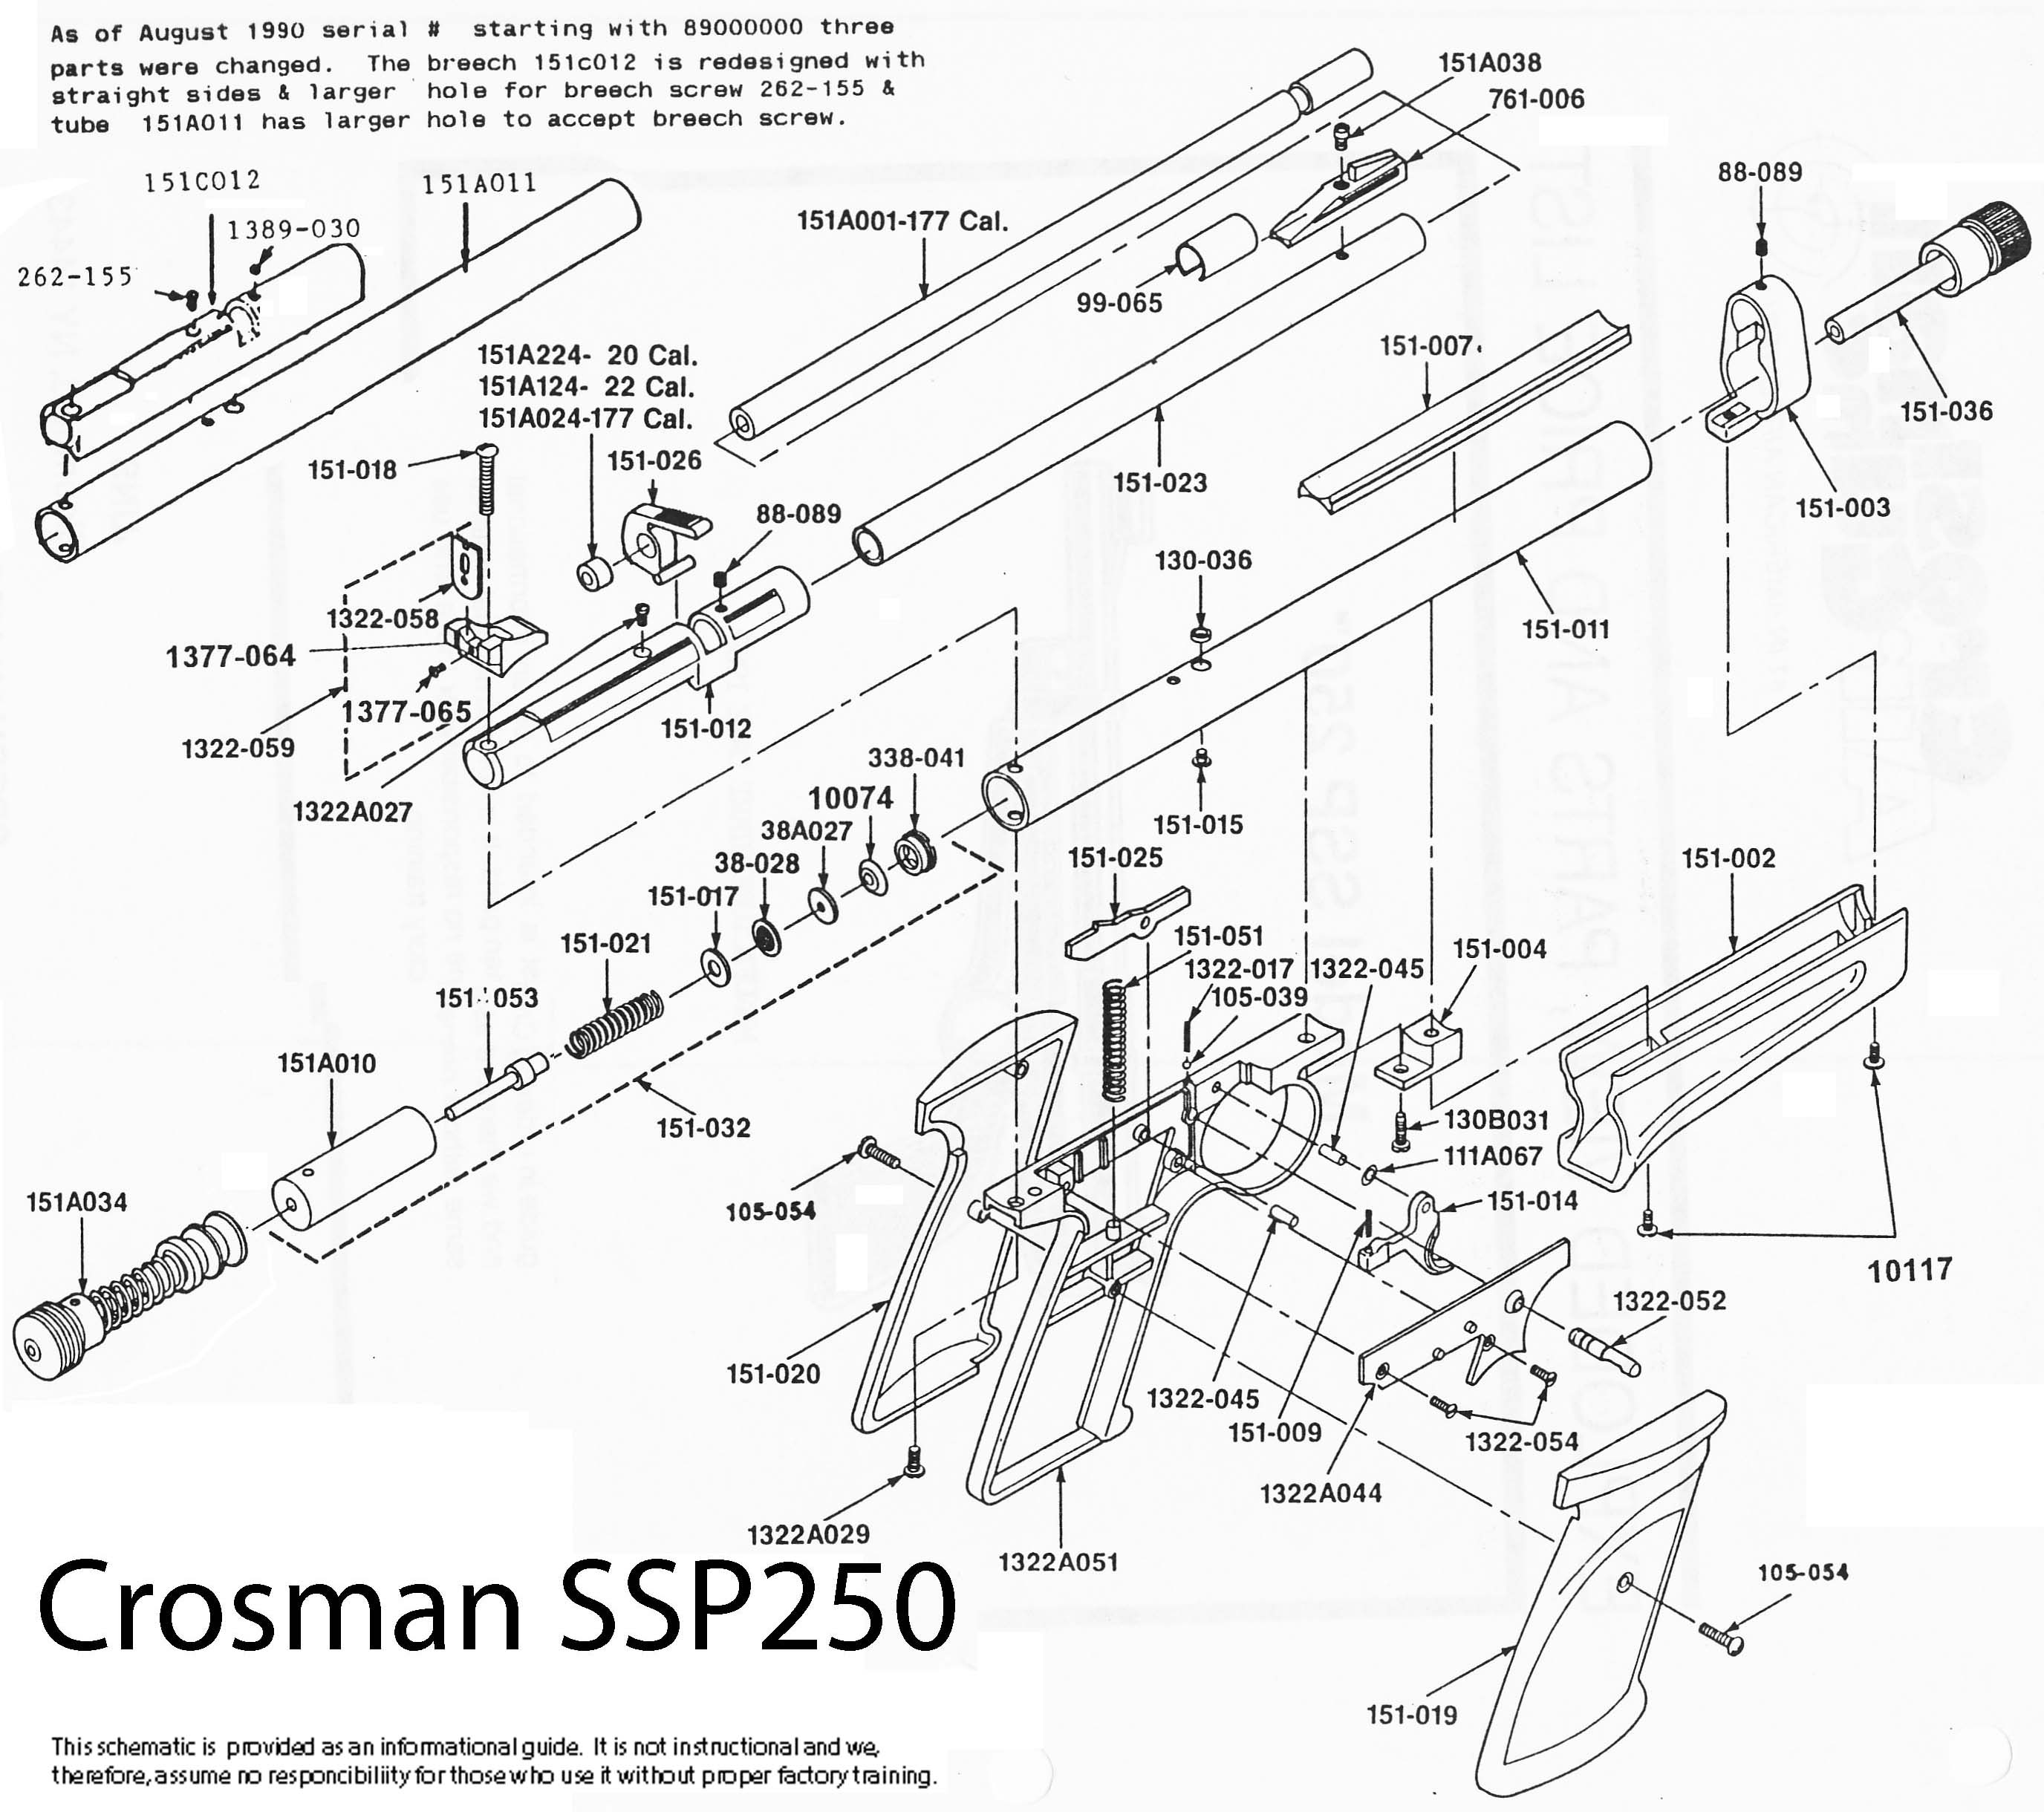 SSP 250 Schematic